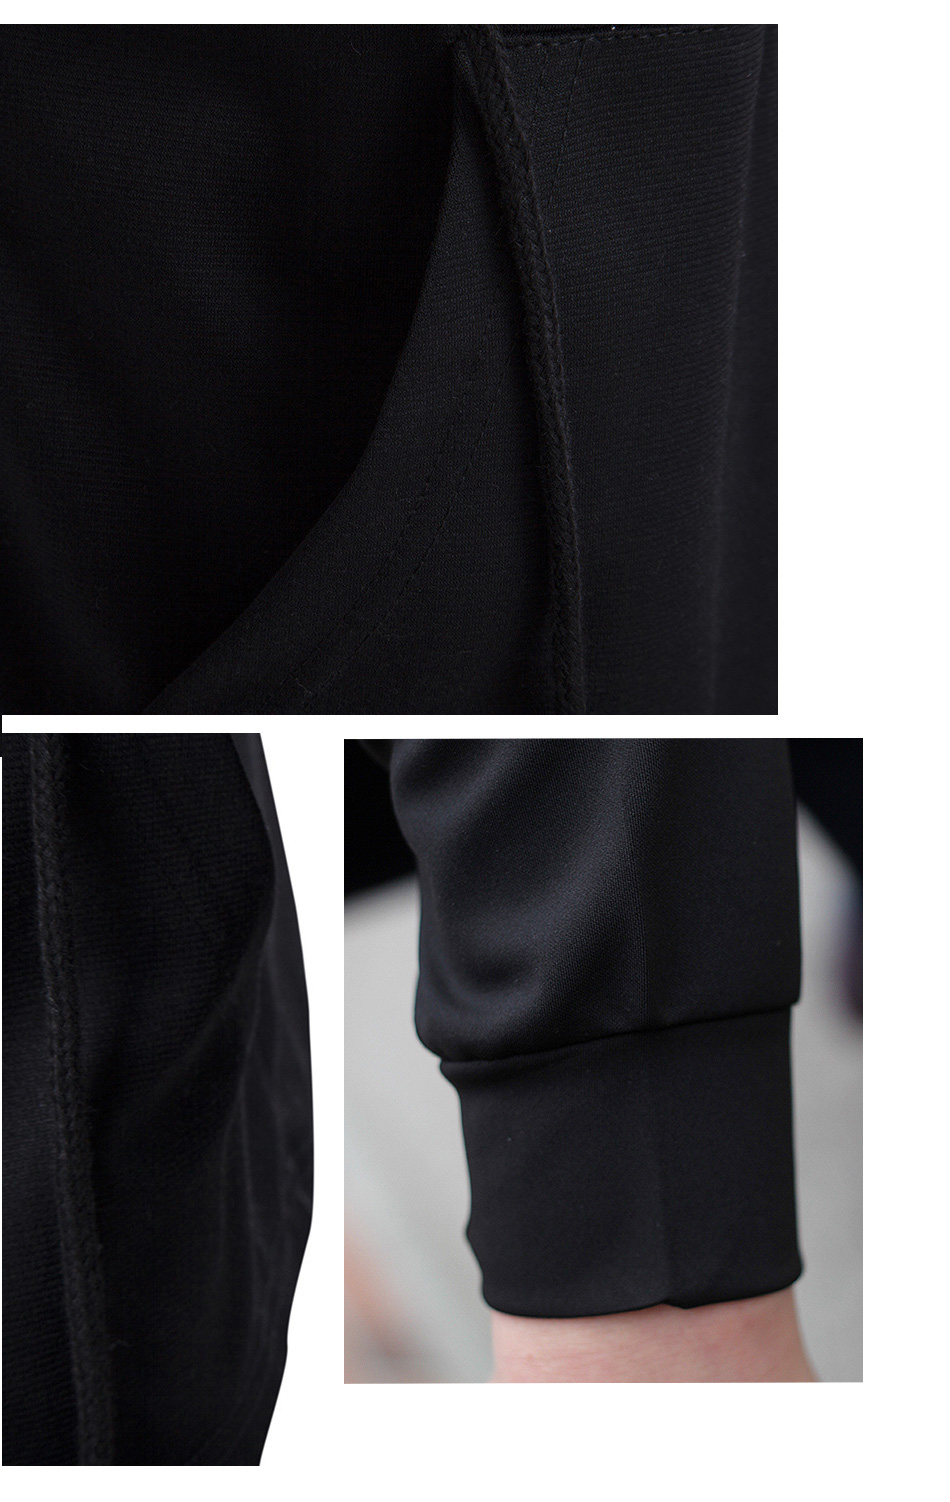 Men-Hooded-Jacket-Black-Gown-Best-Quality-Hip-Hop-Mantle-Hoodie-Sweatshirts-long-Sleeves-Cloak-Coats-32794239599